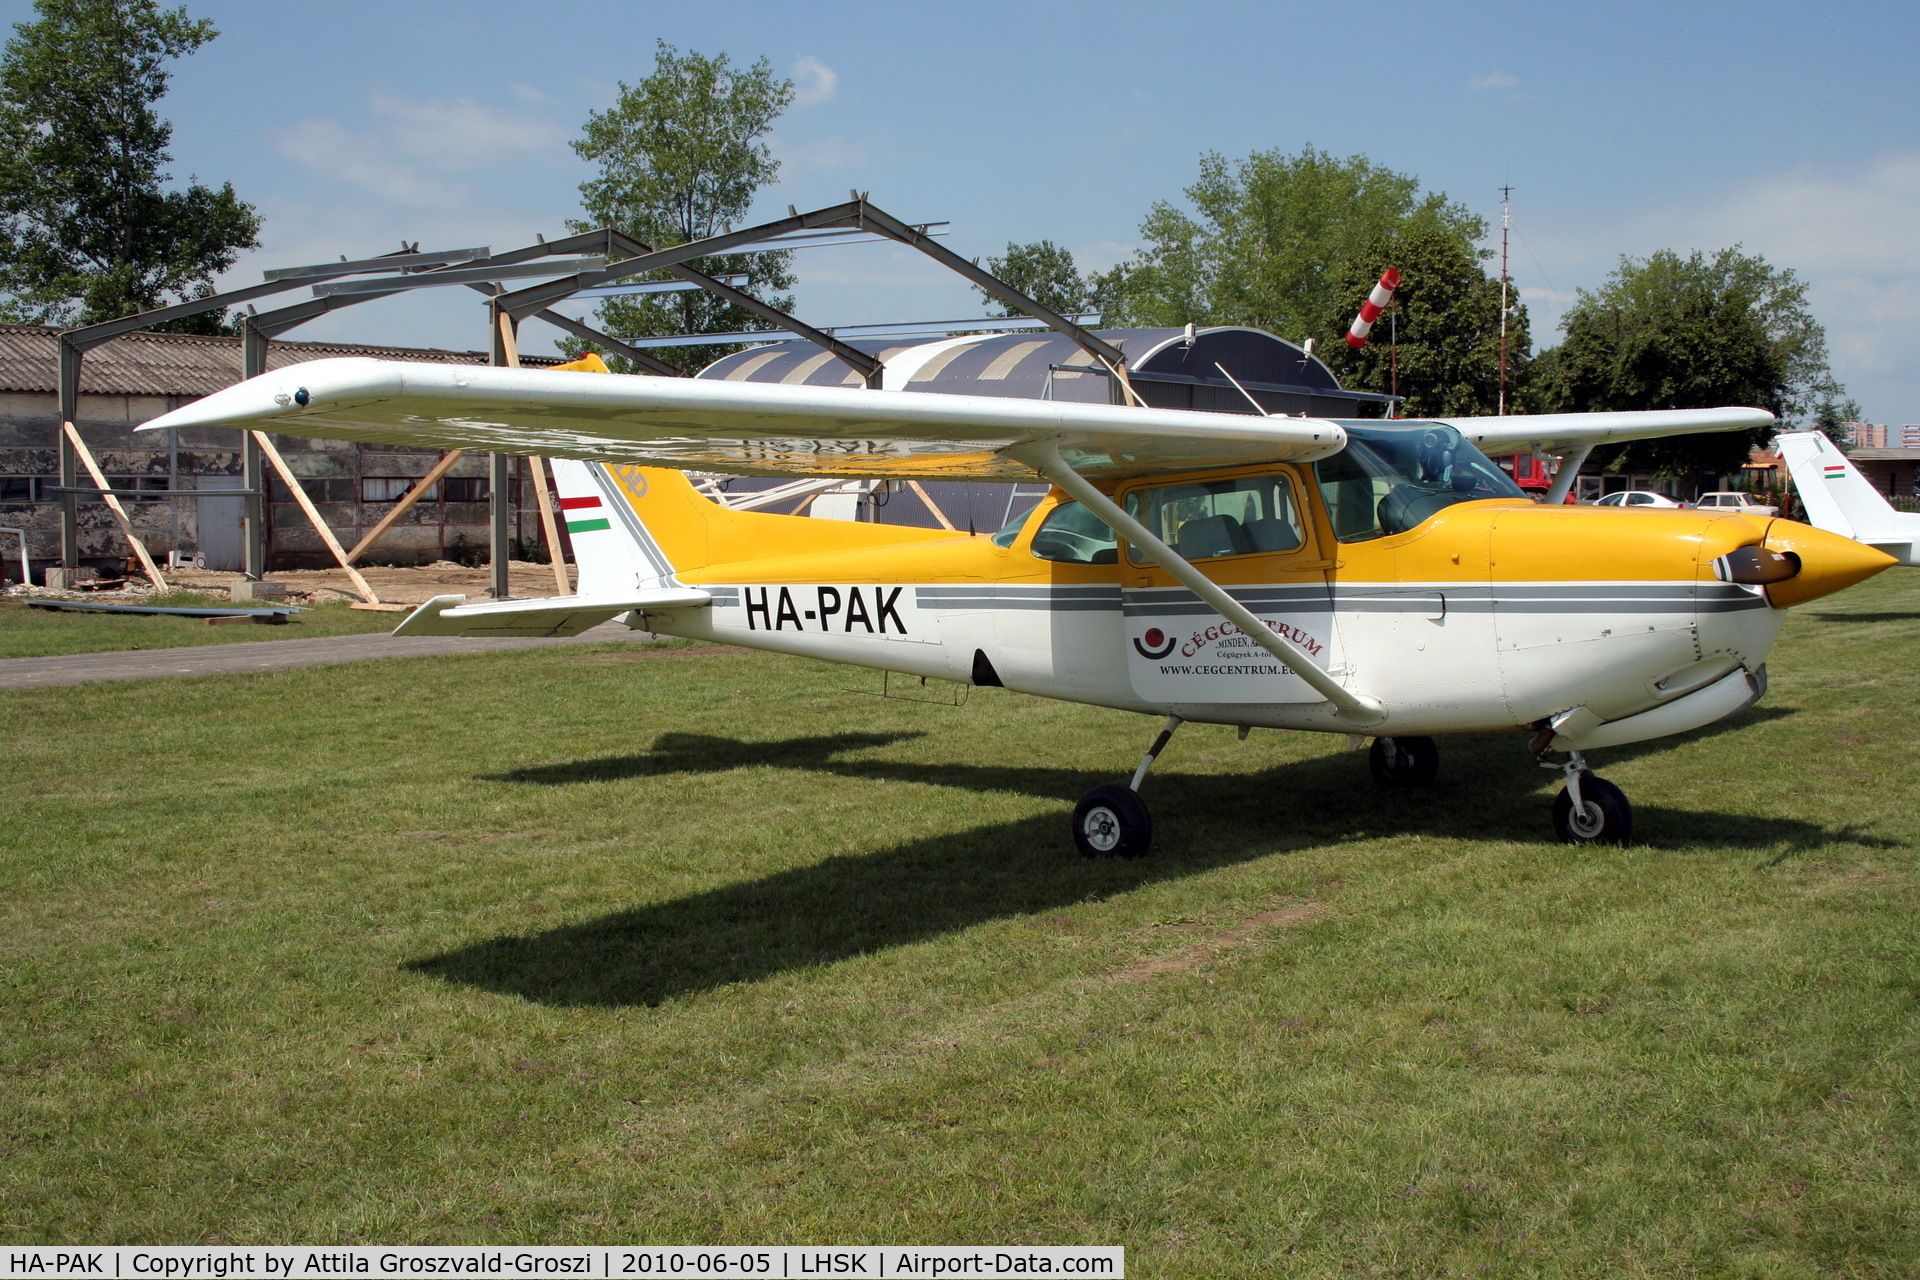 HA-PAK, 1980 Cessna 172RG Cutlass RG C/N 172RG-0375, Siófok-Kiliti Airport, Hungary.